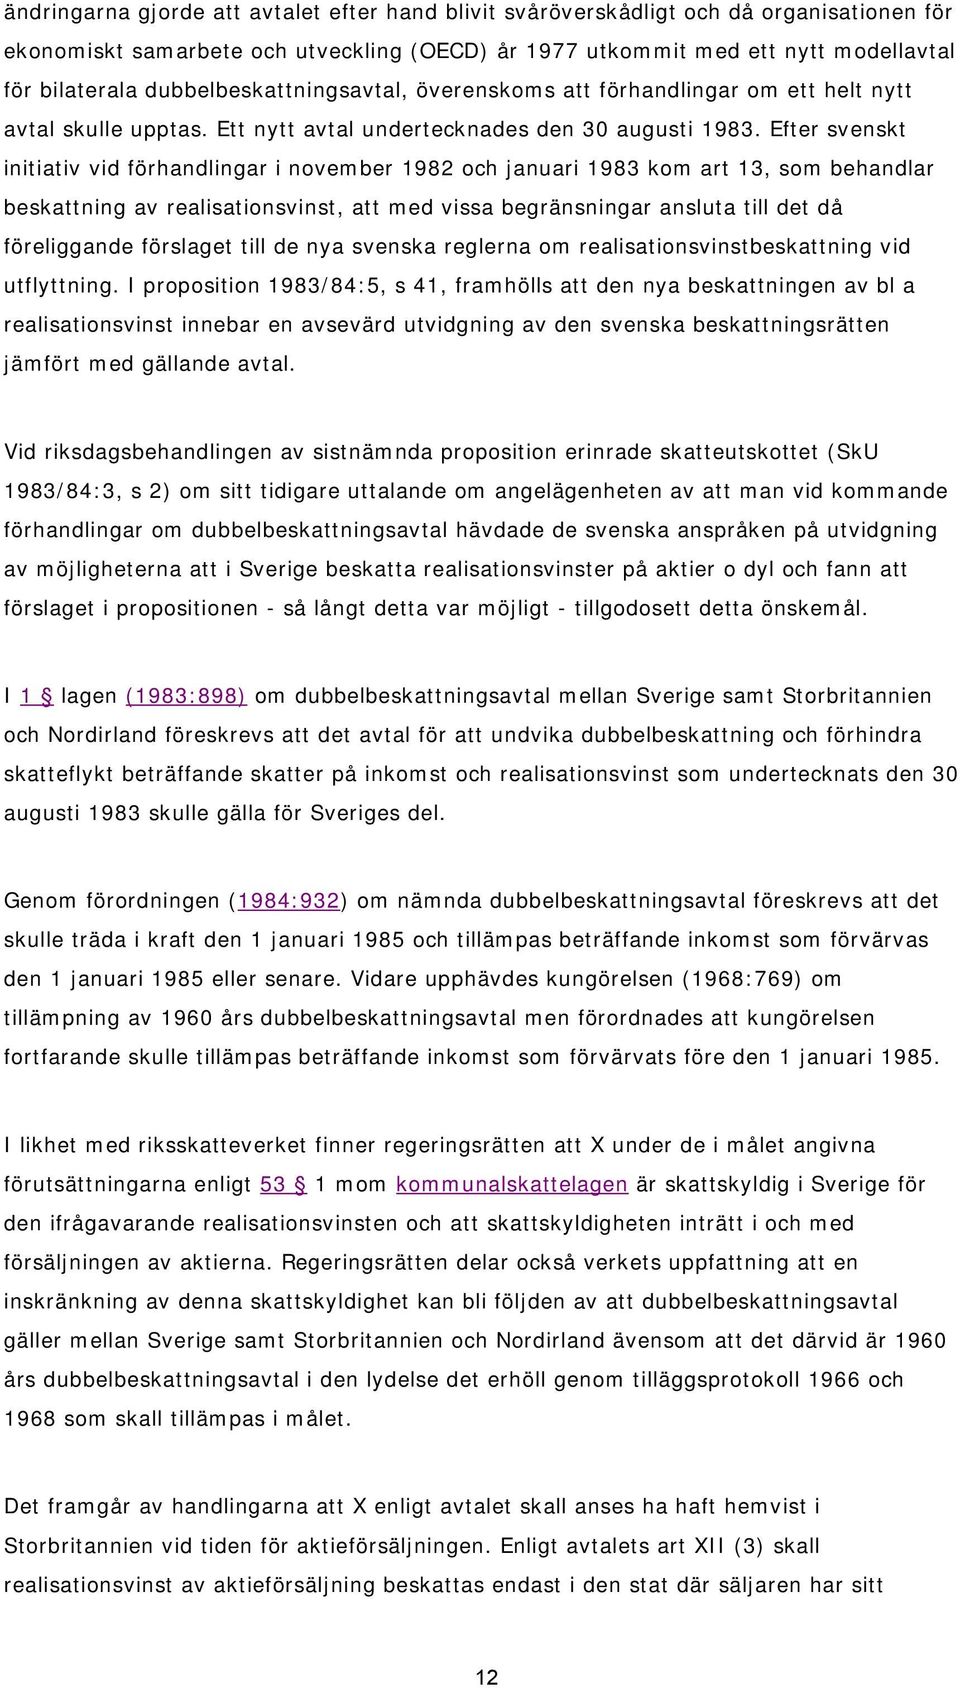 Efter svenskt initiativ vid förhandlingar i november 1982 och januari 1983 kom art 13, som behandlar beskattning av realisationsvinst, att med vissa begränsningar ansluta till det då föreliggande